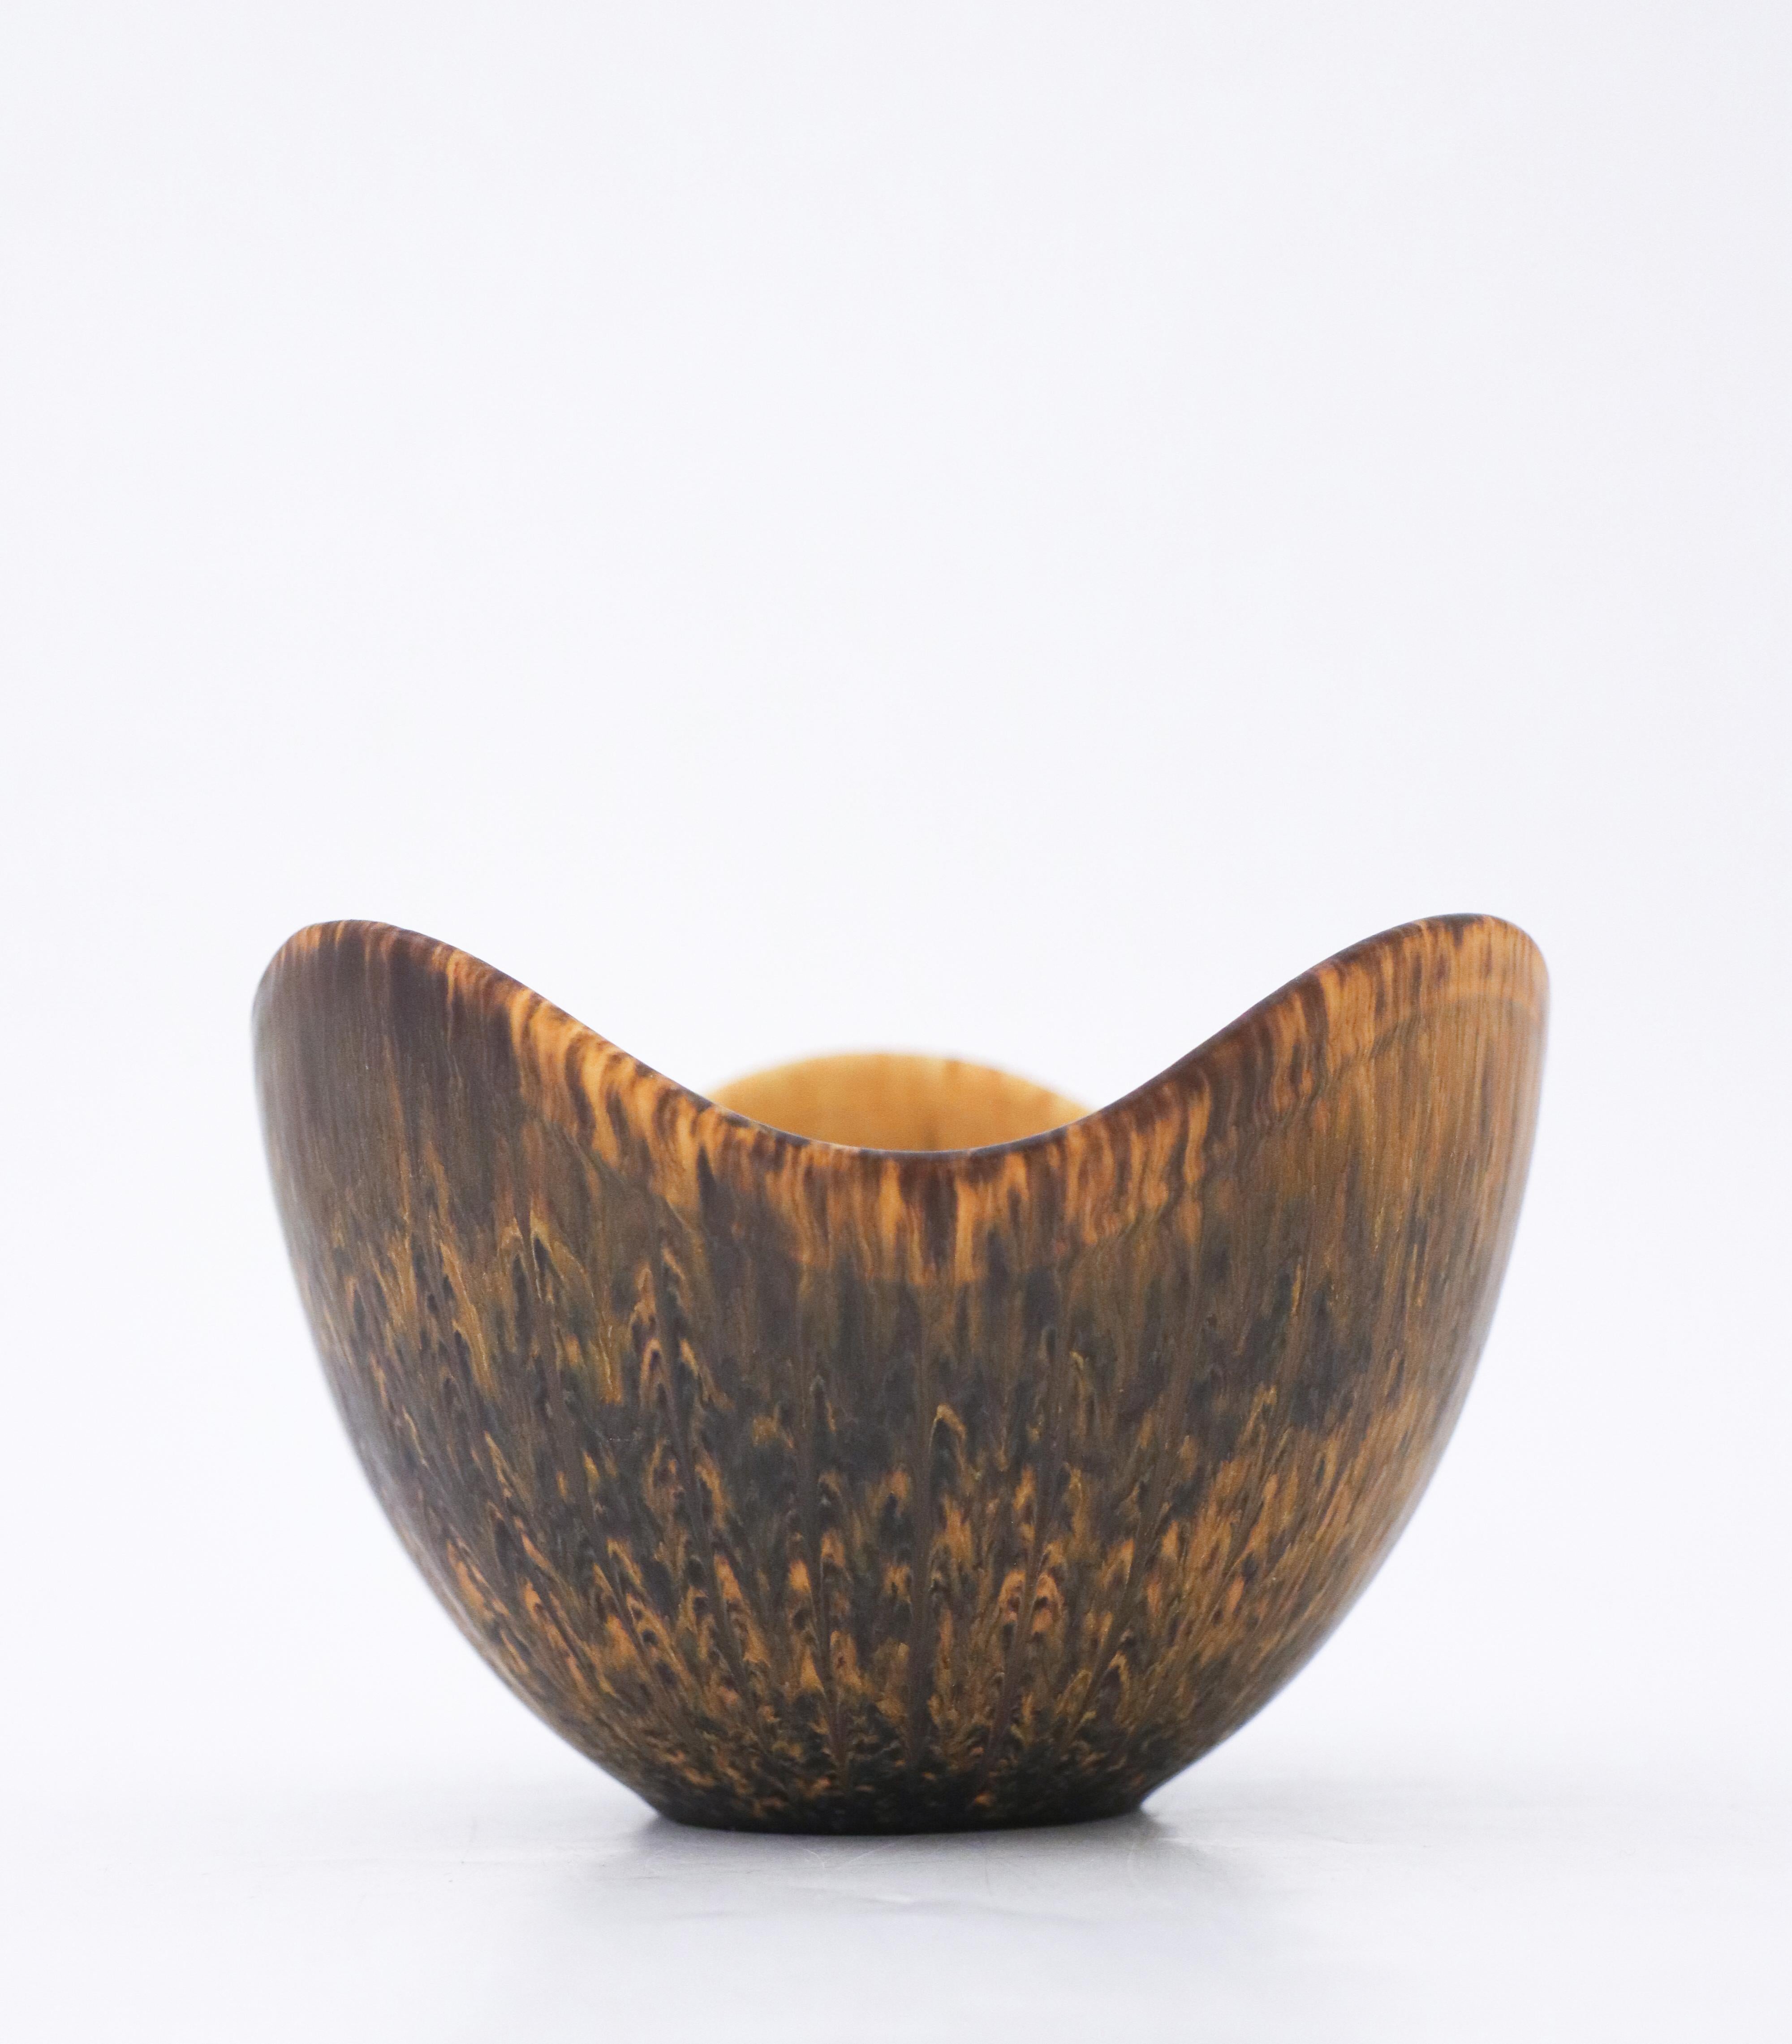 Un joli bol brun avec une belle glaçure conçu par Gunnar Nylund à Rörstrand, il mesure 13,5 cm de diamètre et environ 9,5 cm de hauteur. Il est en très bon état à l'exception de quelques marques mineures et marqué comme étant de 2ème qualité.